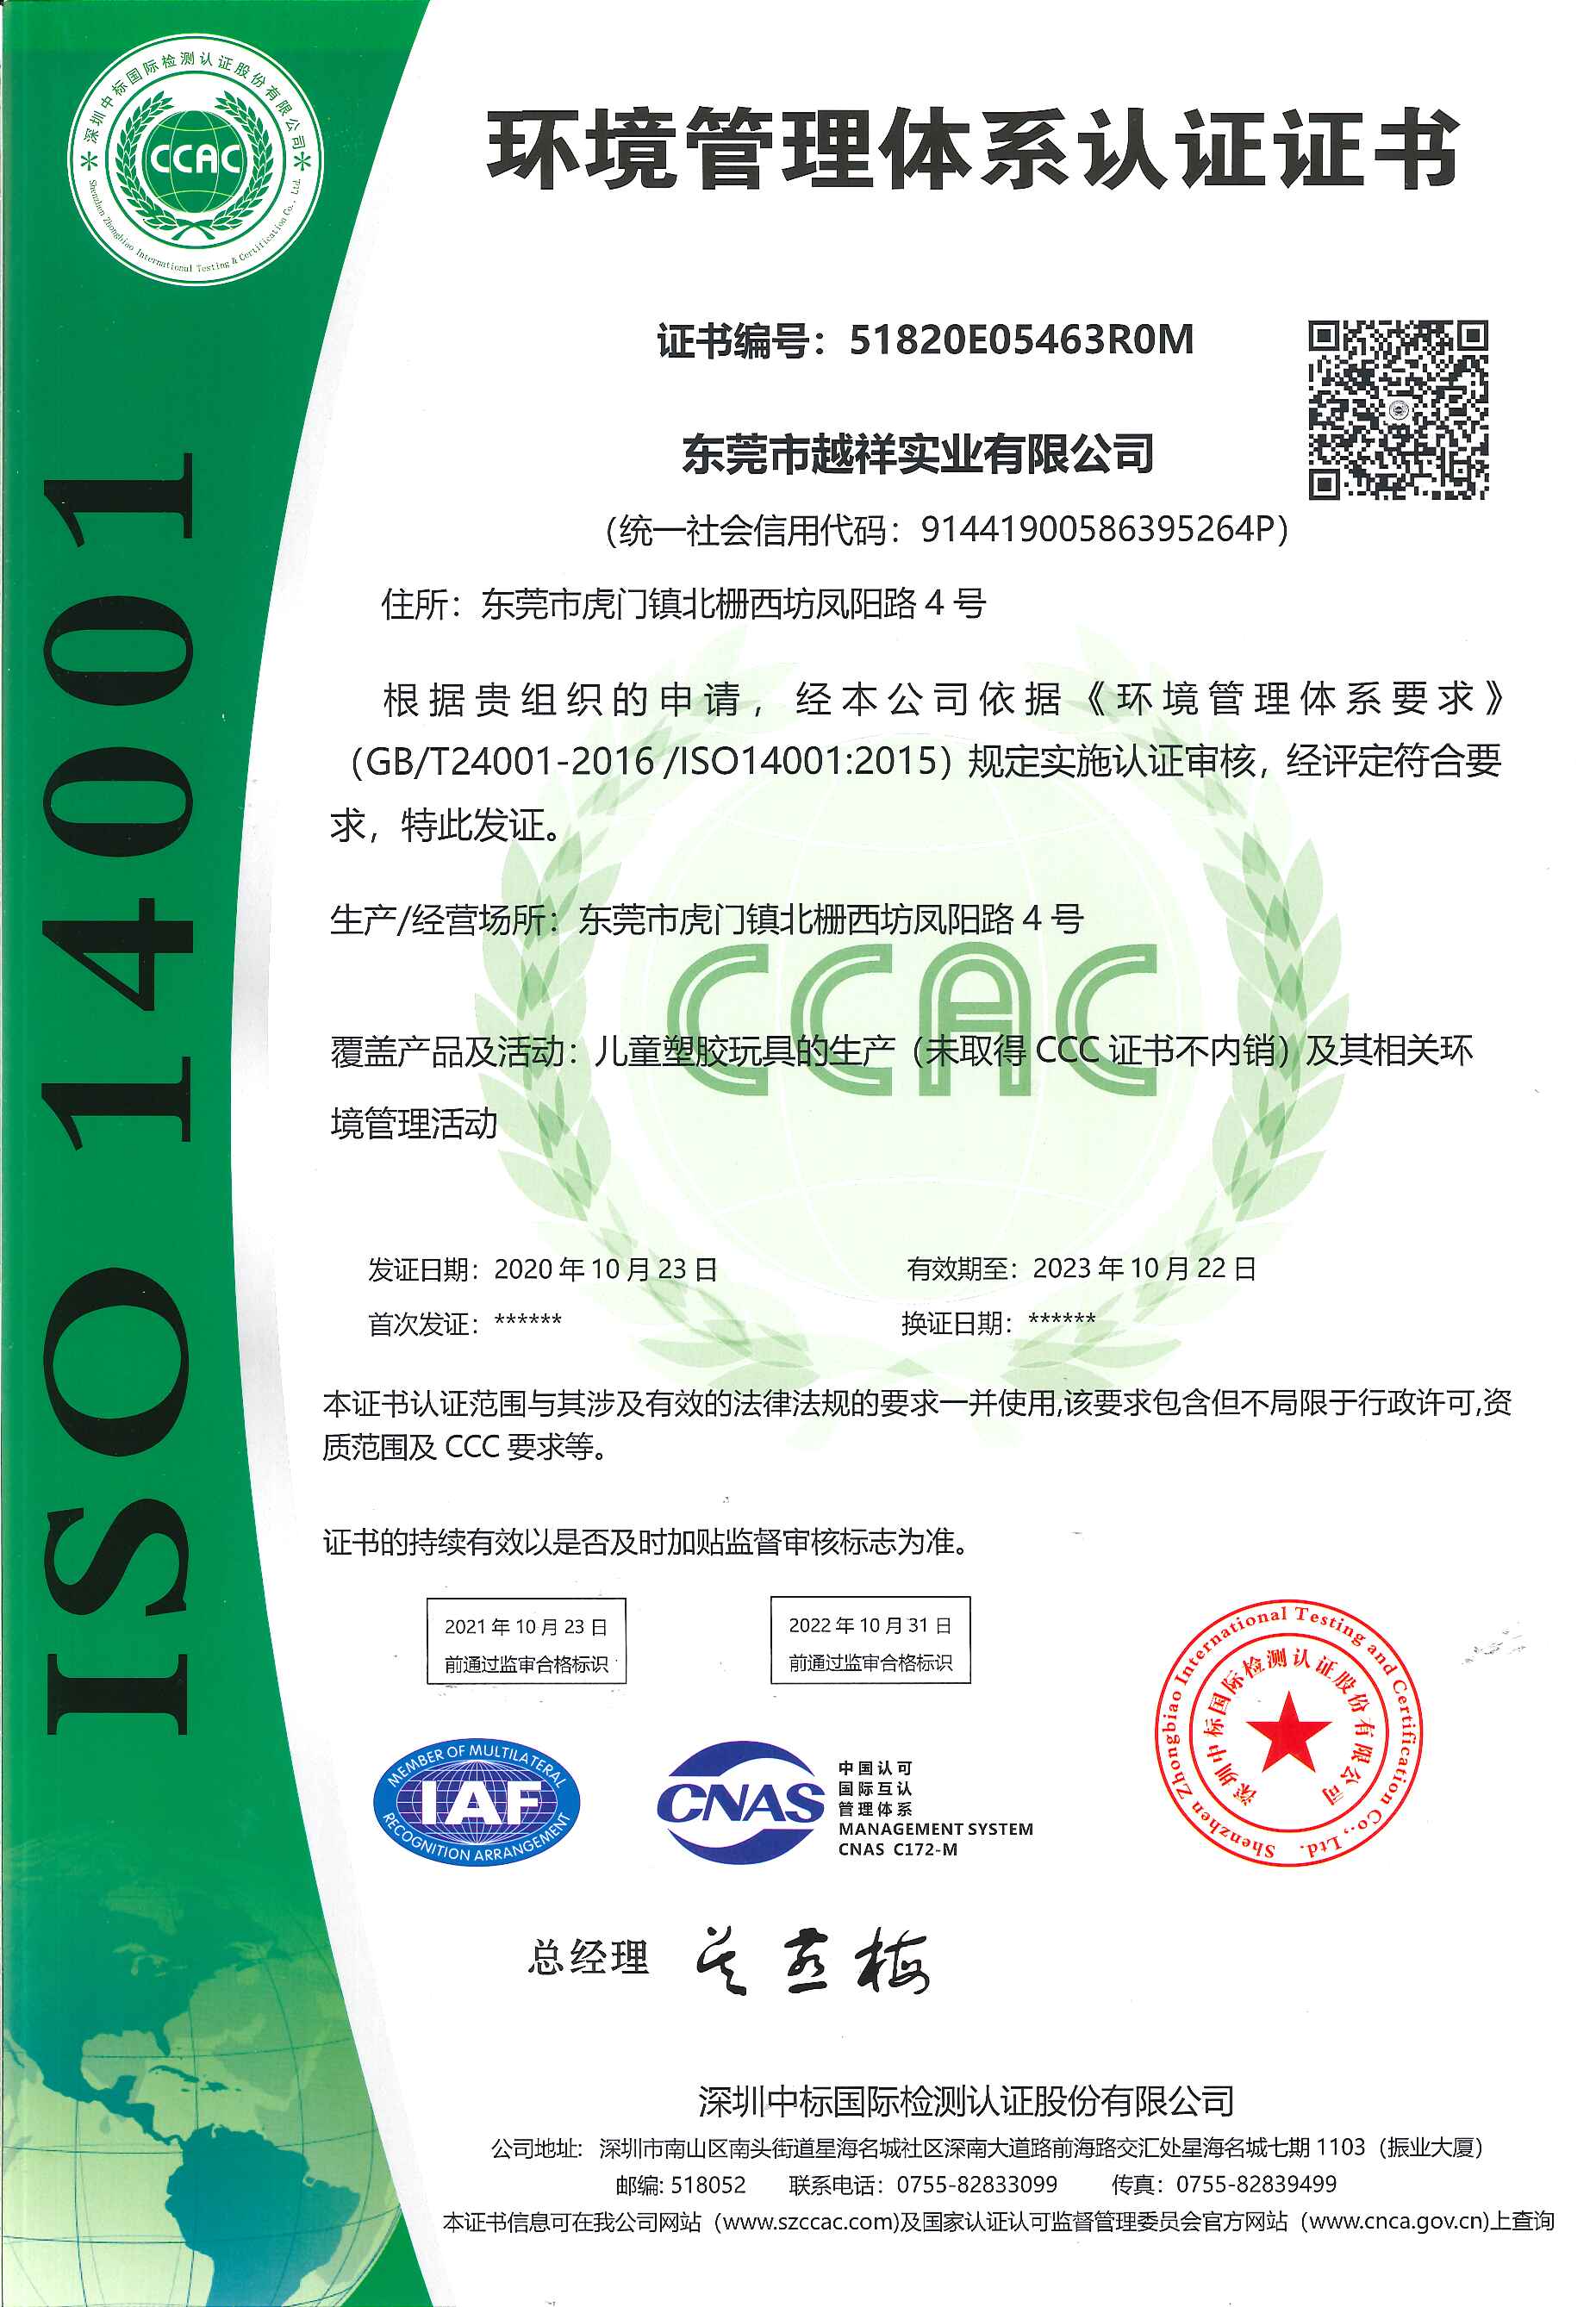 祝贺东莞市越祥实业有限公司通过ISO14001认证审核